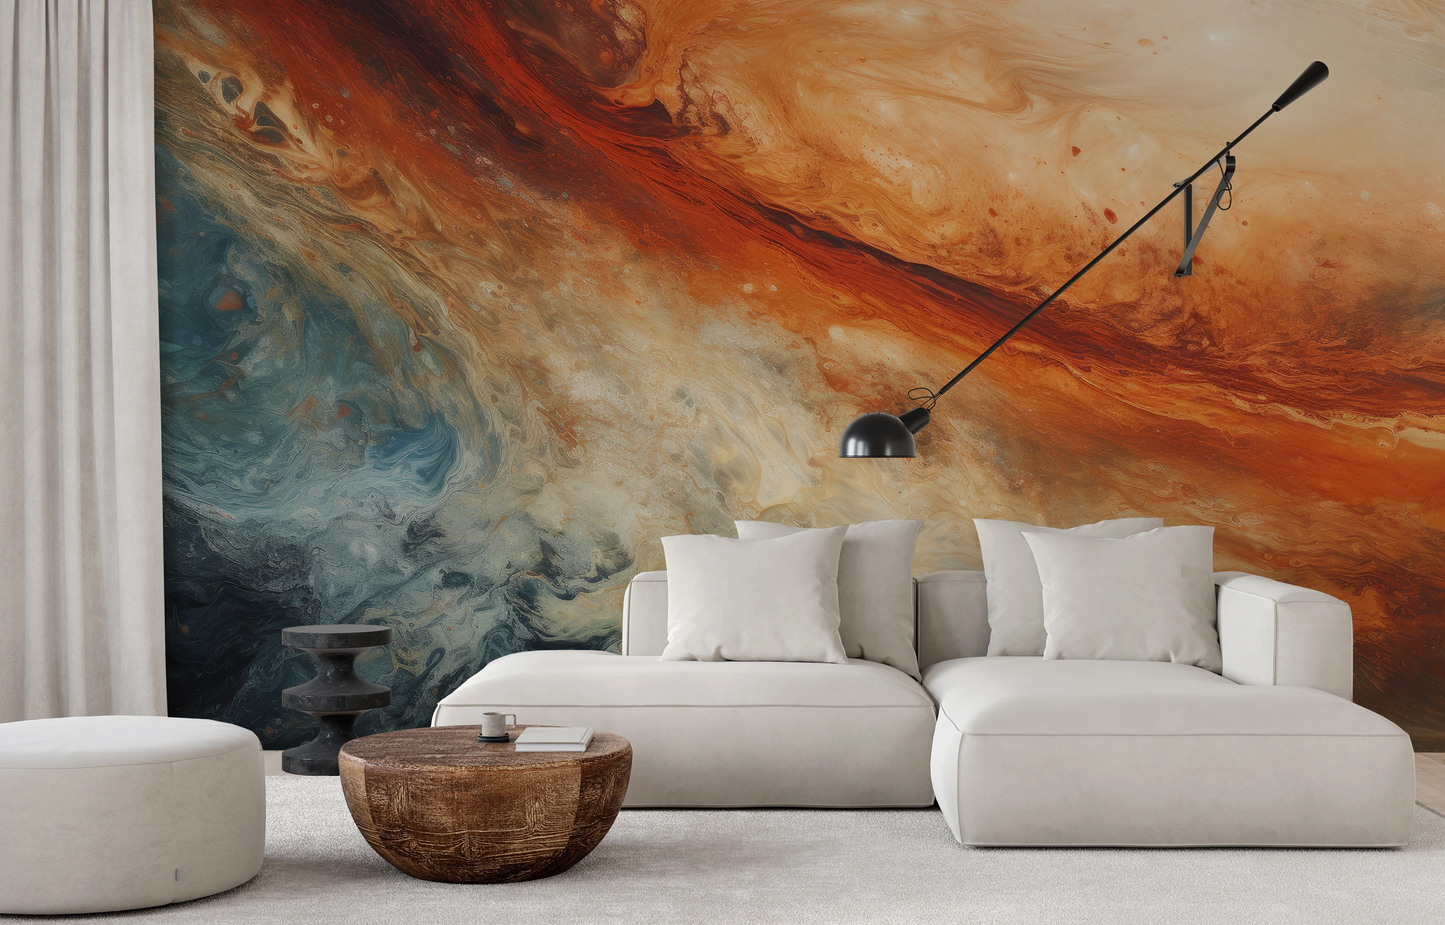 Wzór fototapety artystycznej o nazwie Jupiter's Storm pokazanej w aranżacji wnętrza.